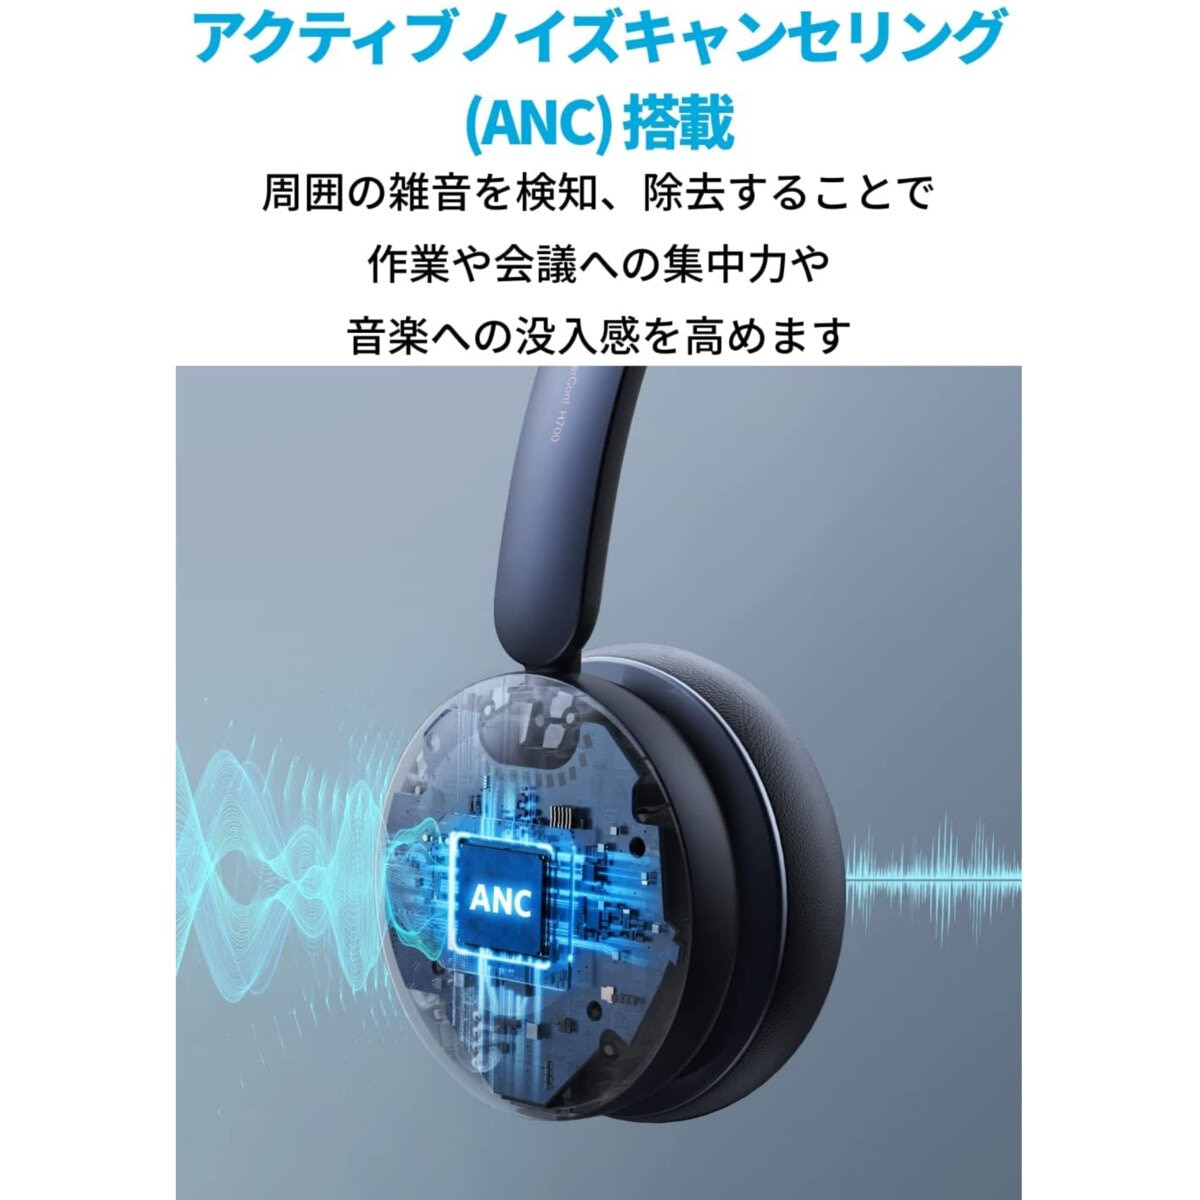 アンカー PowerConf H700 オンライン会議用スピーカーフォン